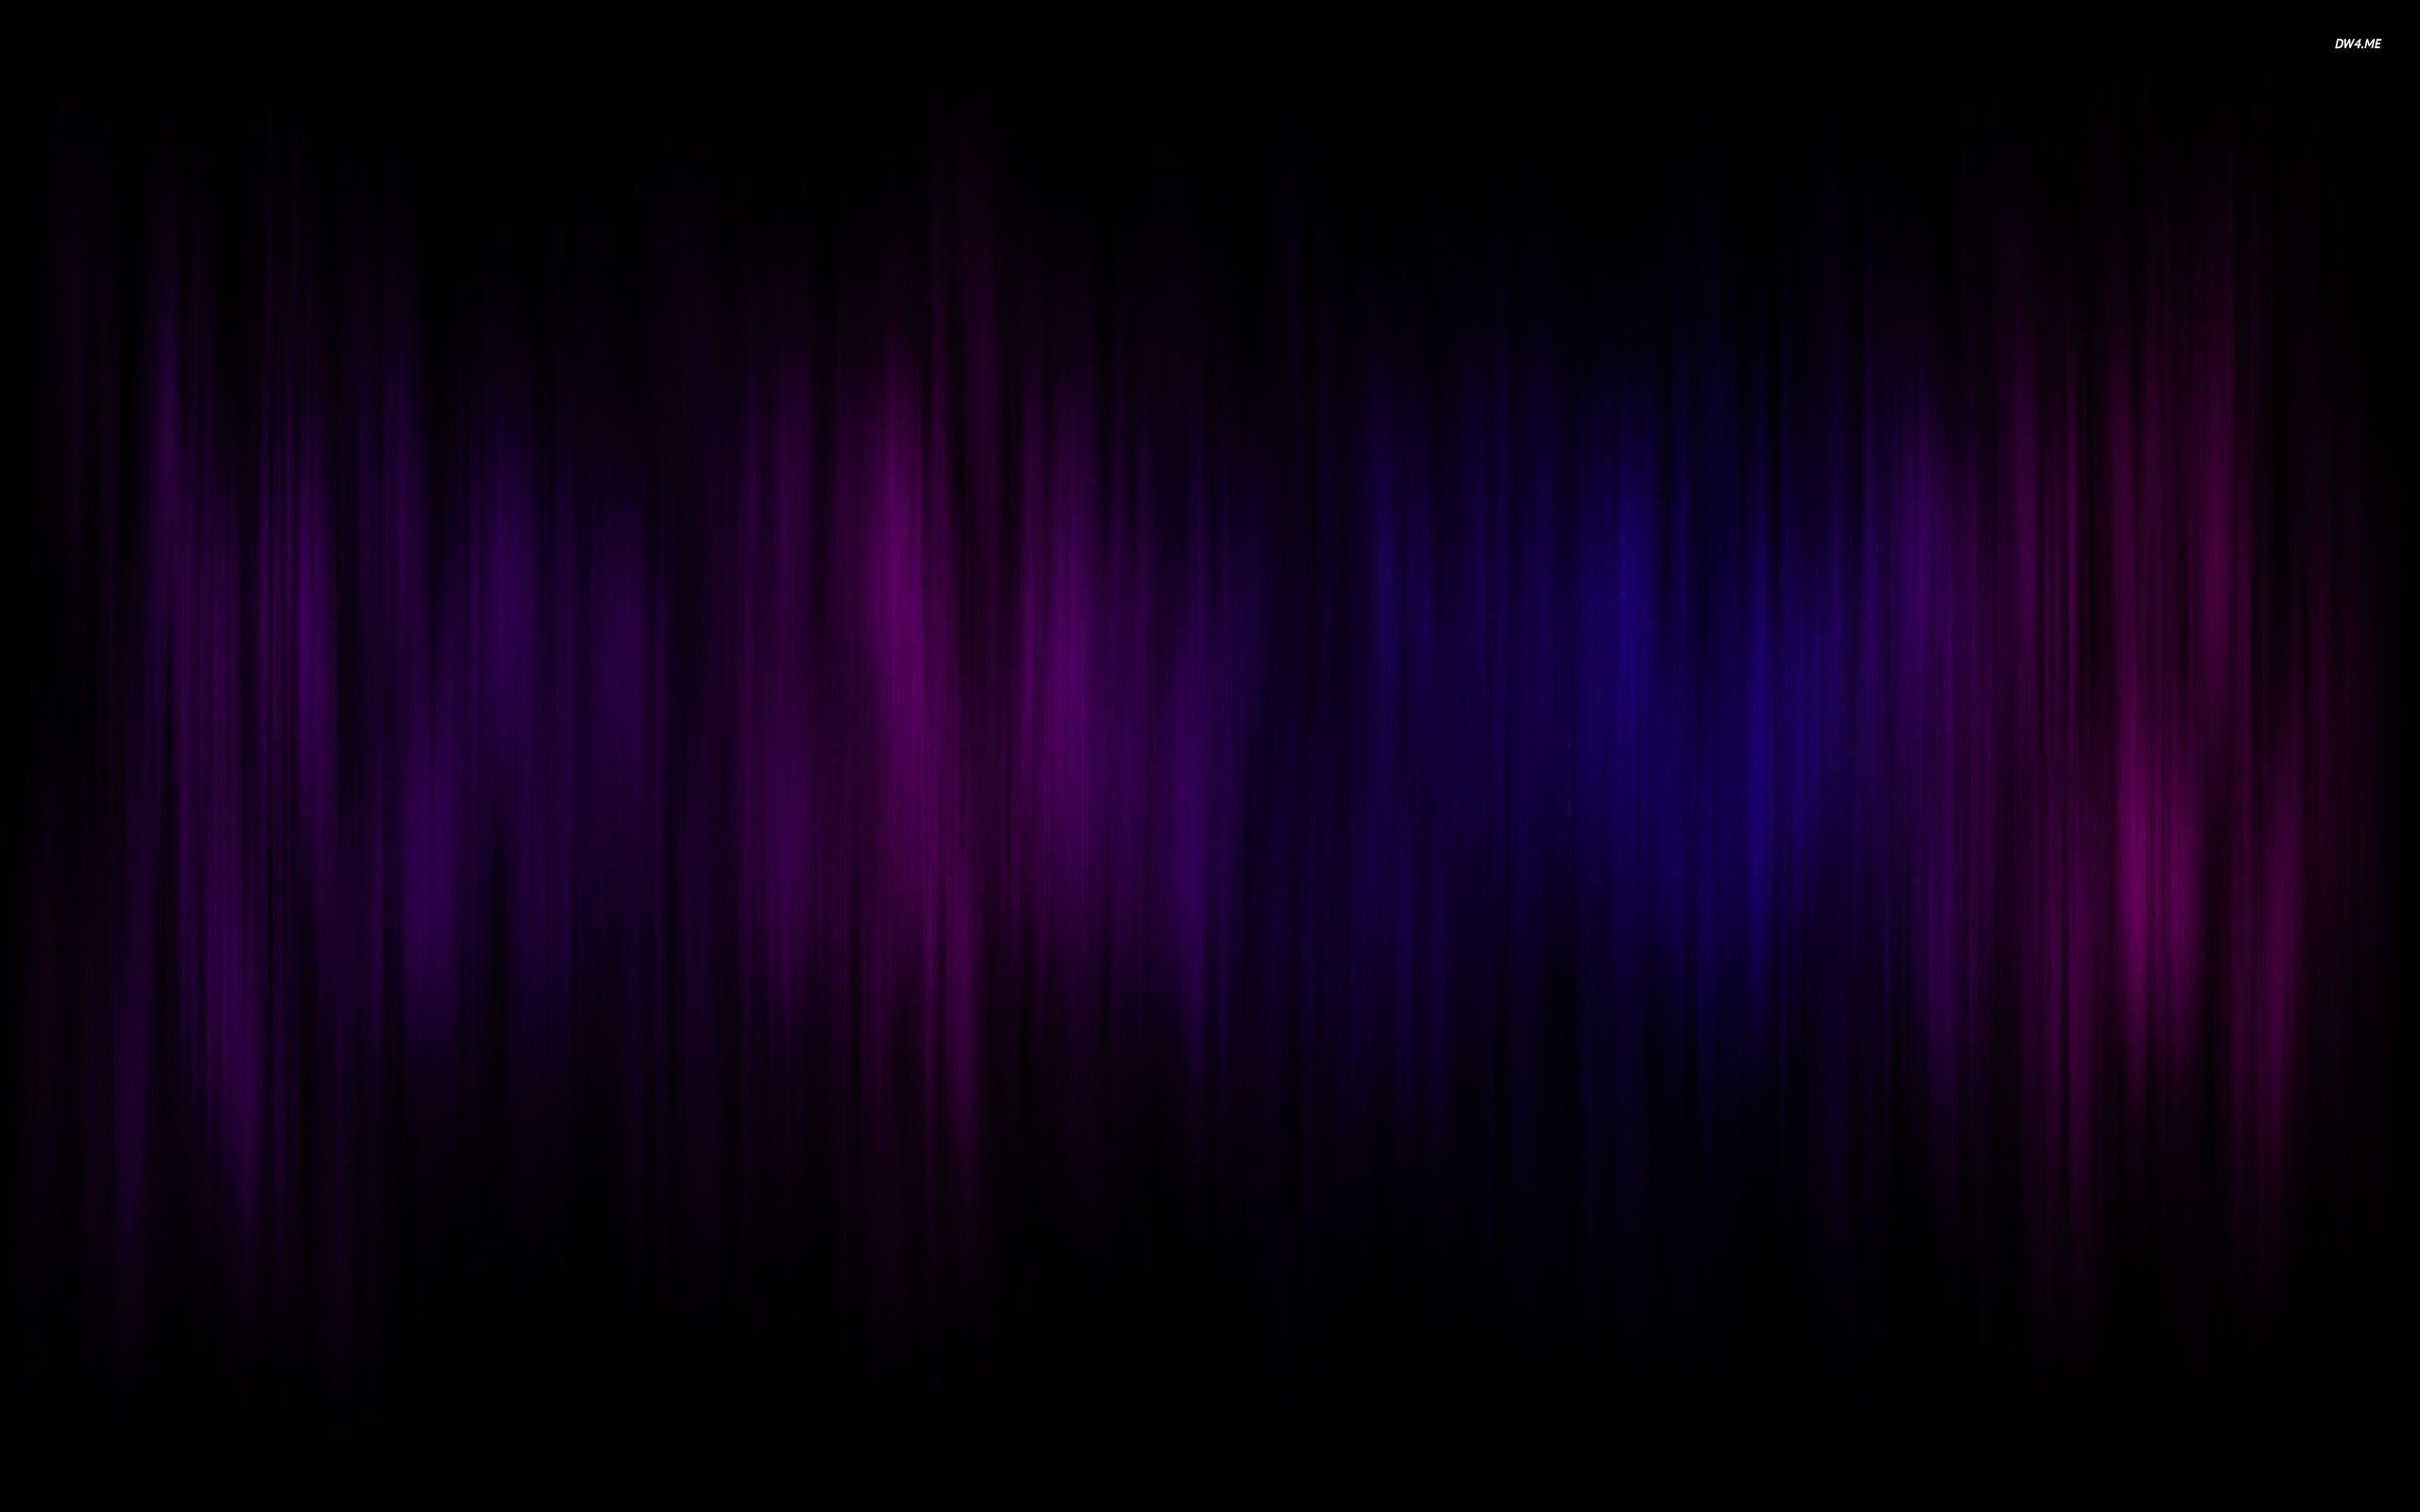 Purple Pc Wallpapers 4k Hd Purple Pc Backgrounds On Wallpaperbat